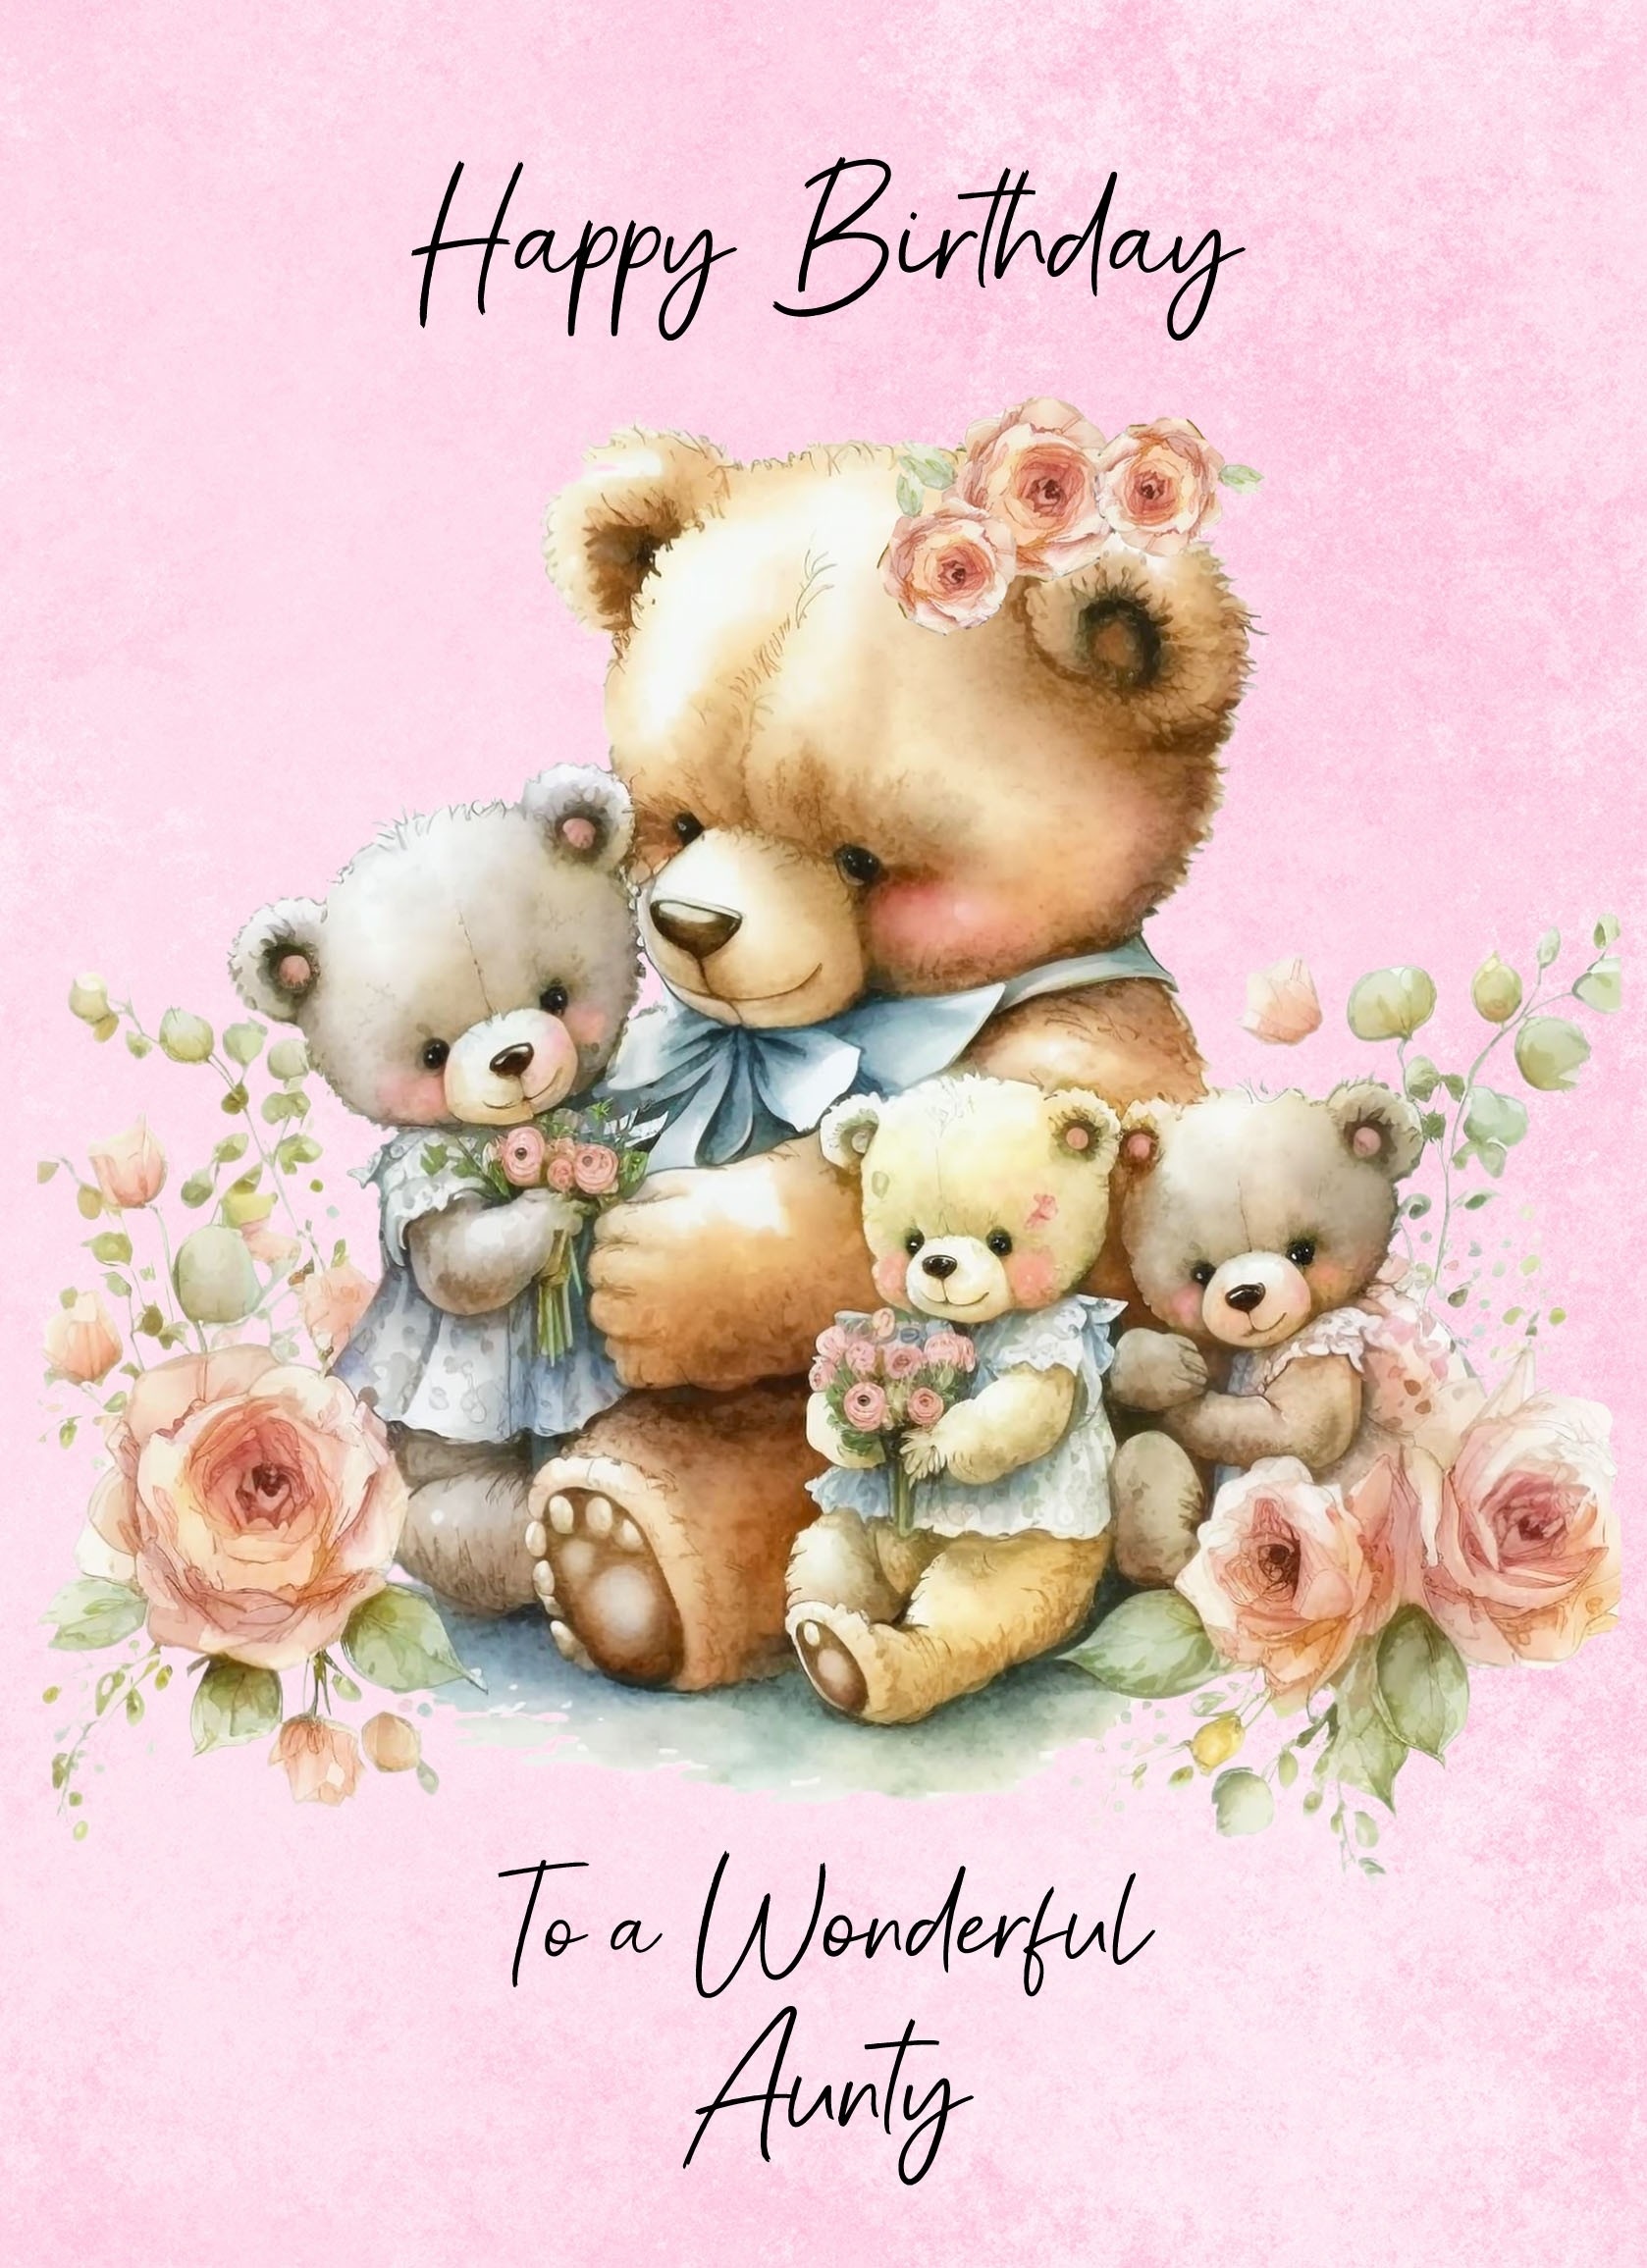 Cuddly Bear Art Birthday Card For Aunty (Design 1)